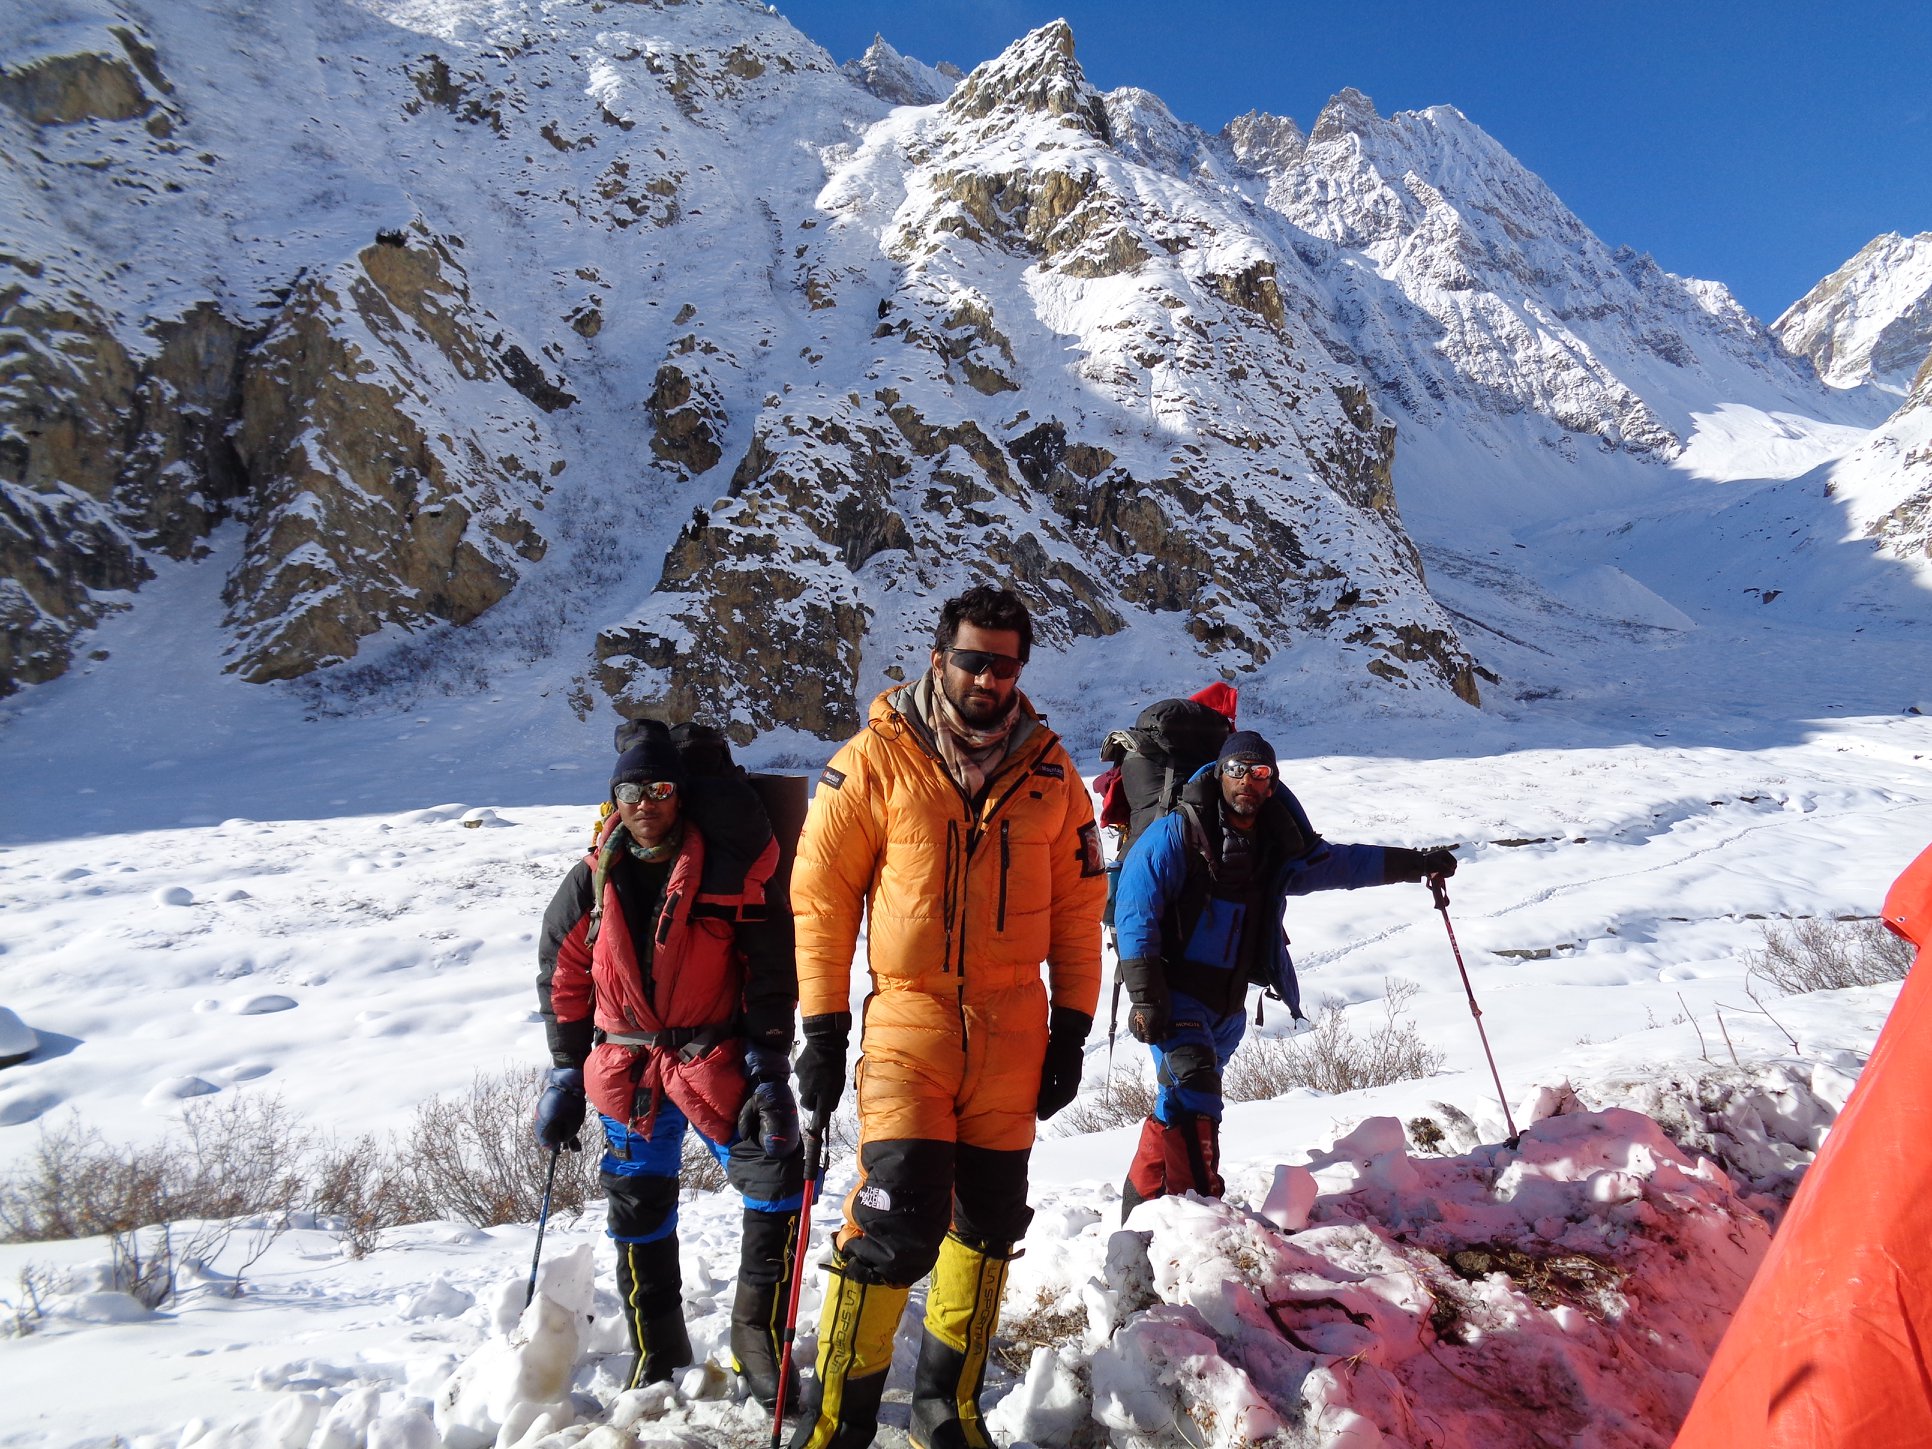 Мааз Максуд (Maaz Maqsood, Пакистан) - с командой во время попытки зимнего восхождения на Машербрум II зимой 2017 / 2018 года 